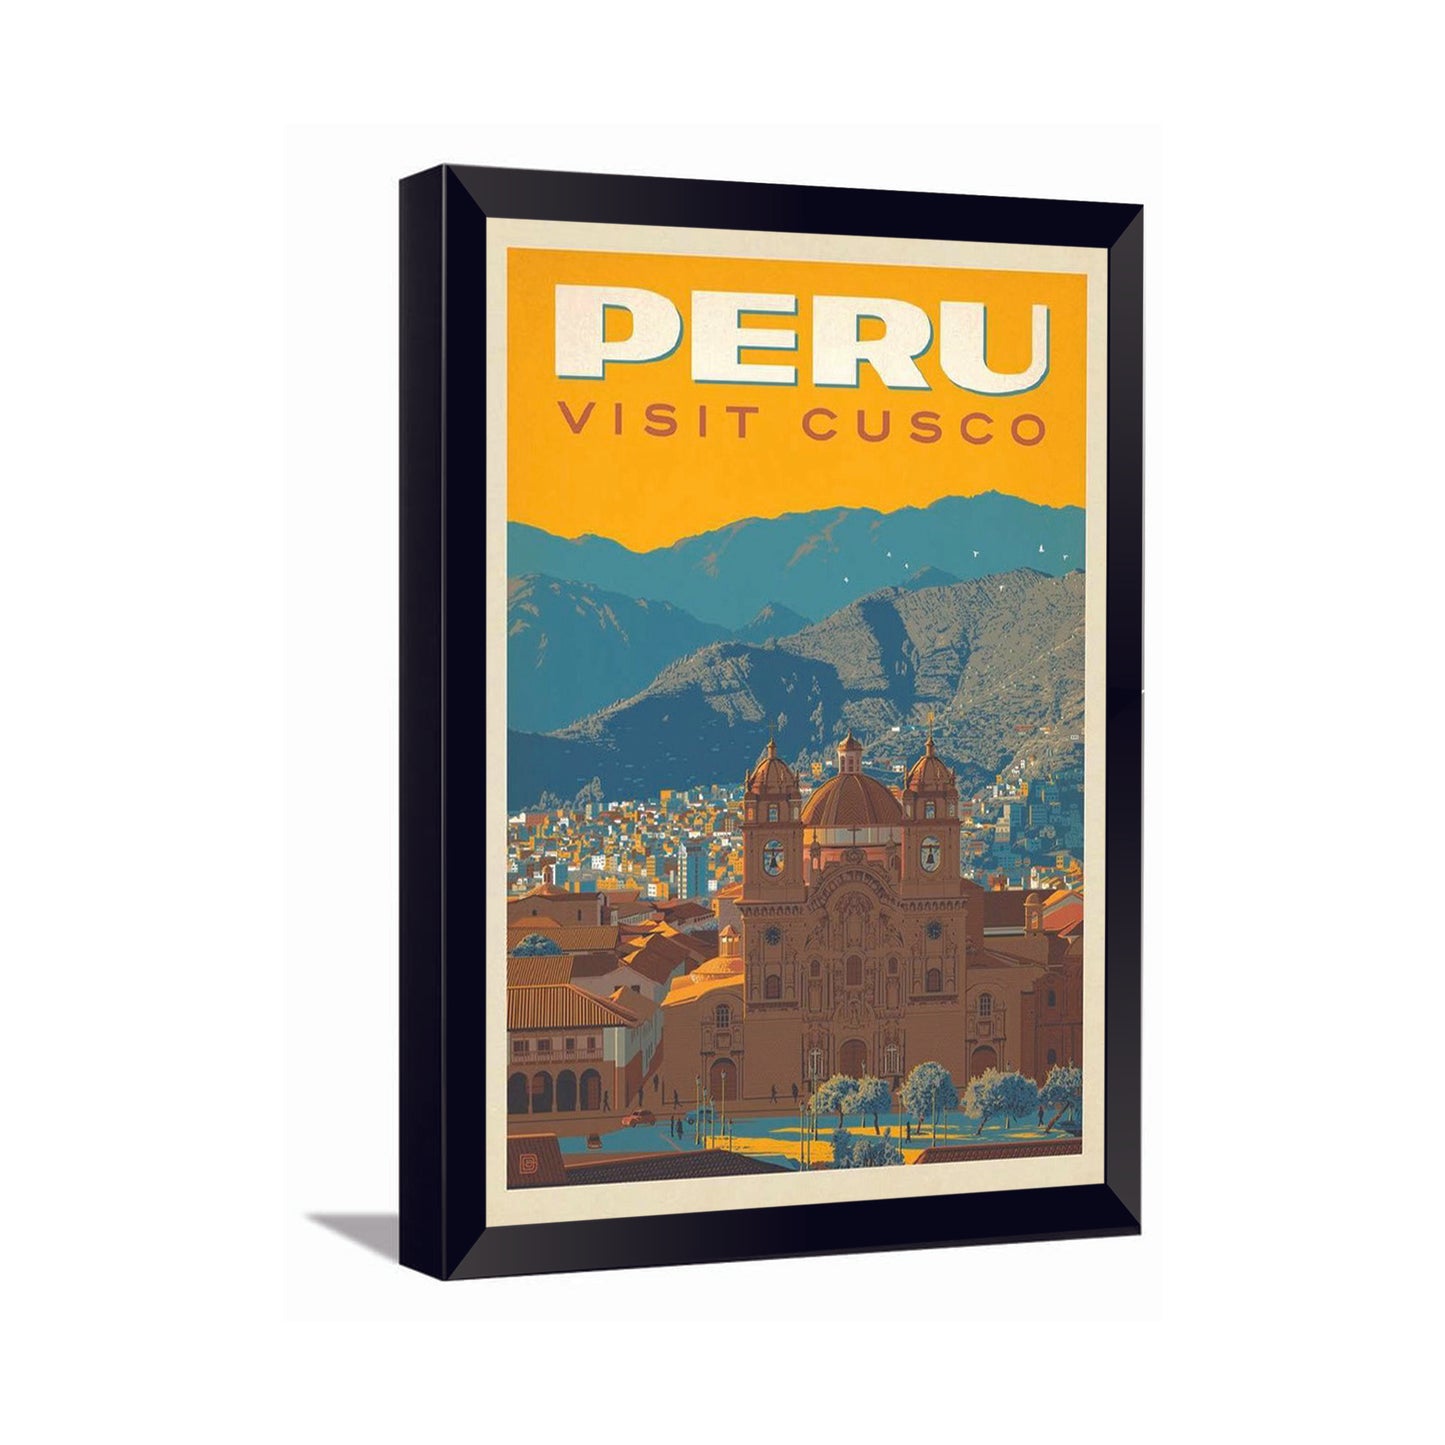 Peru Visit Cusco---